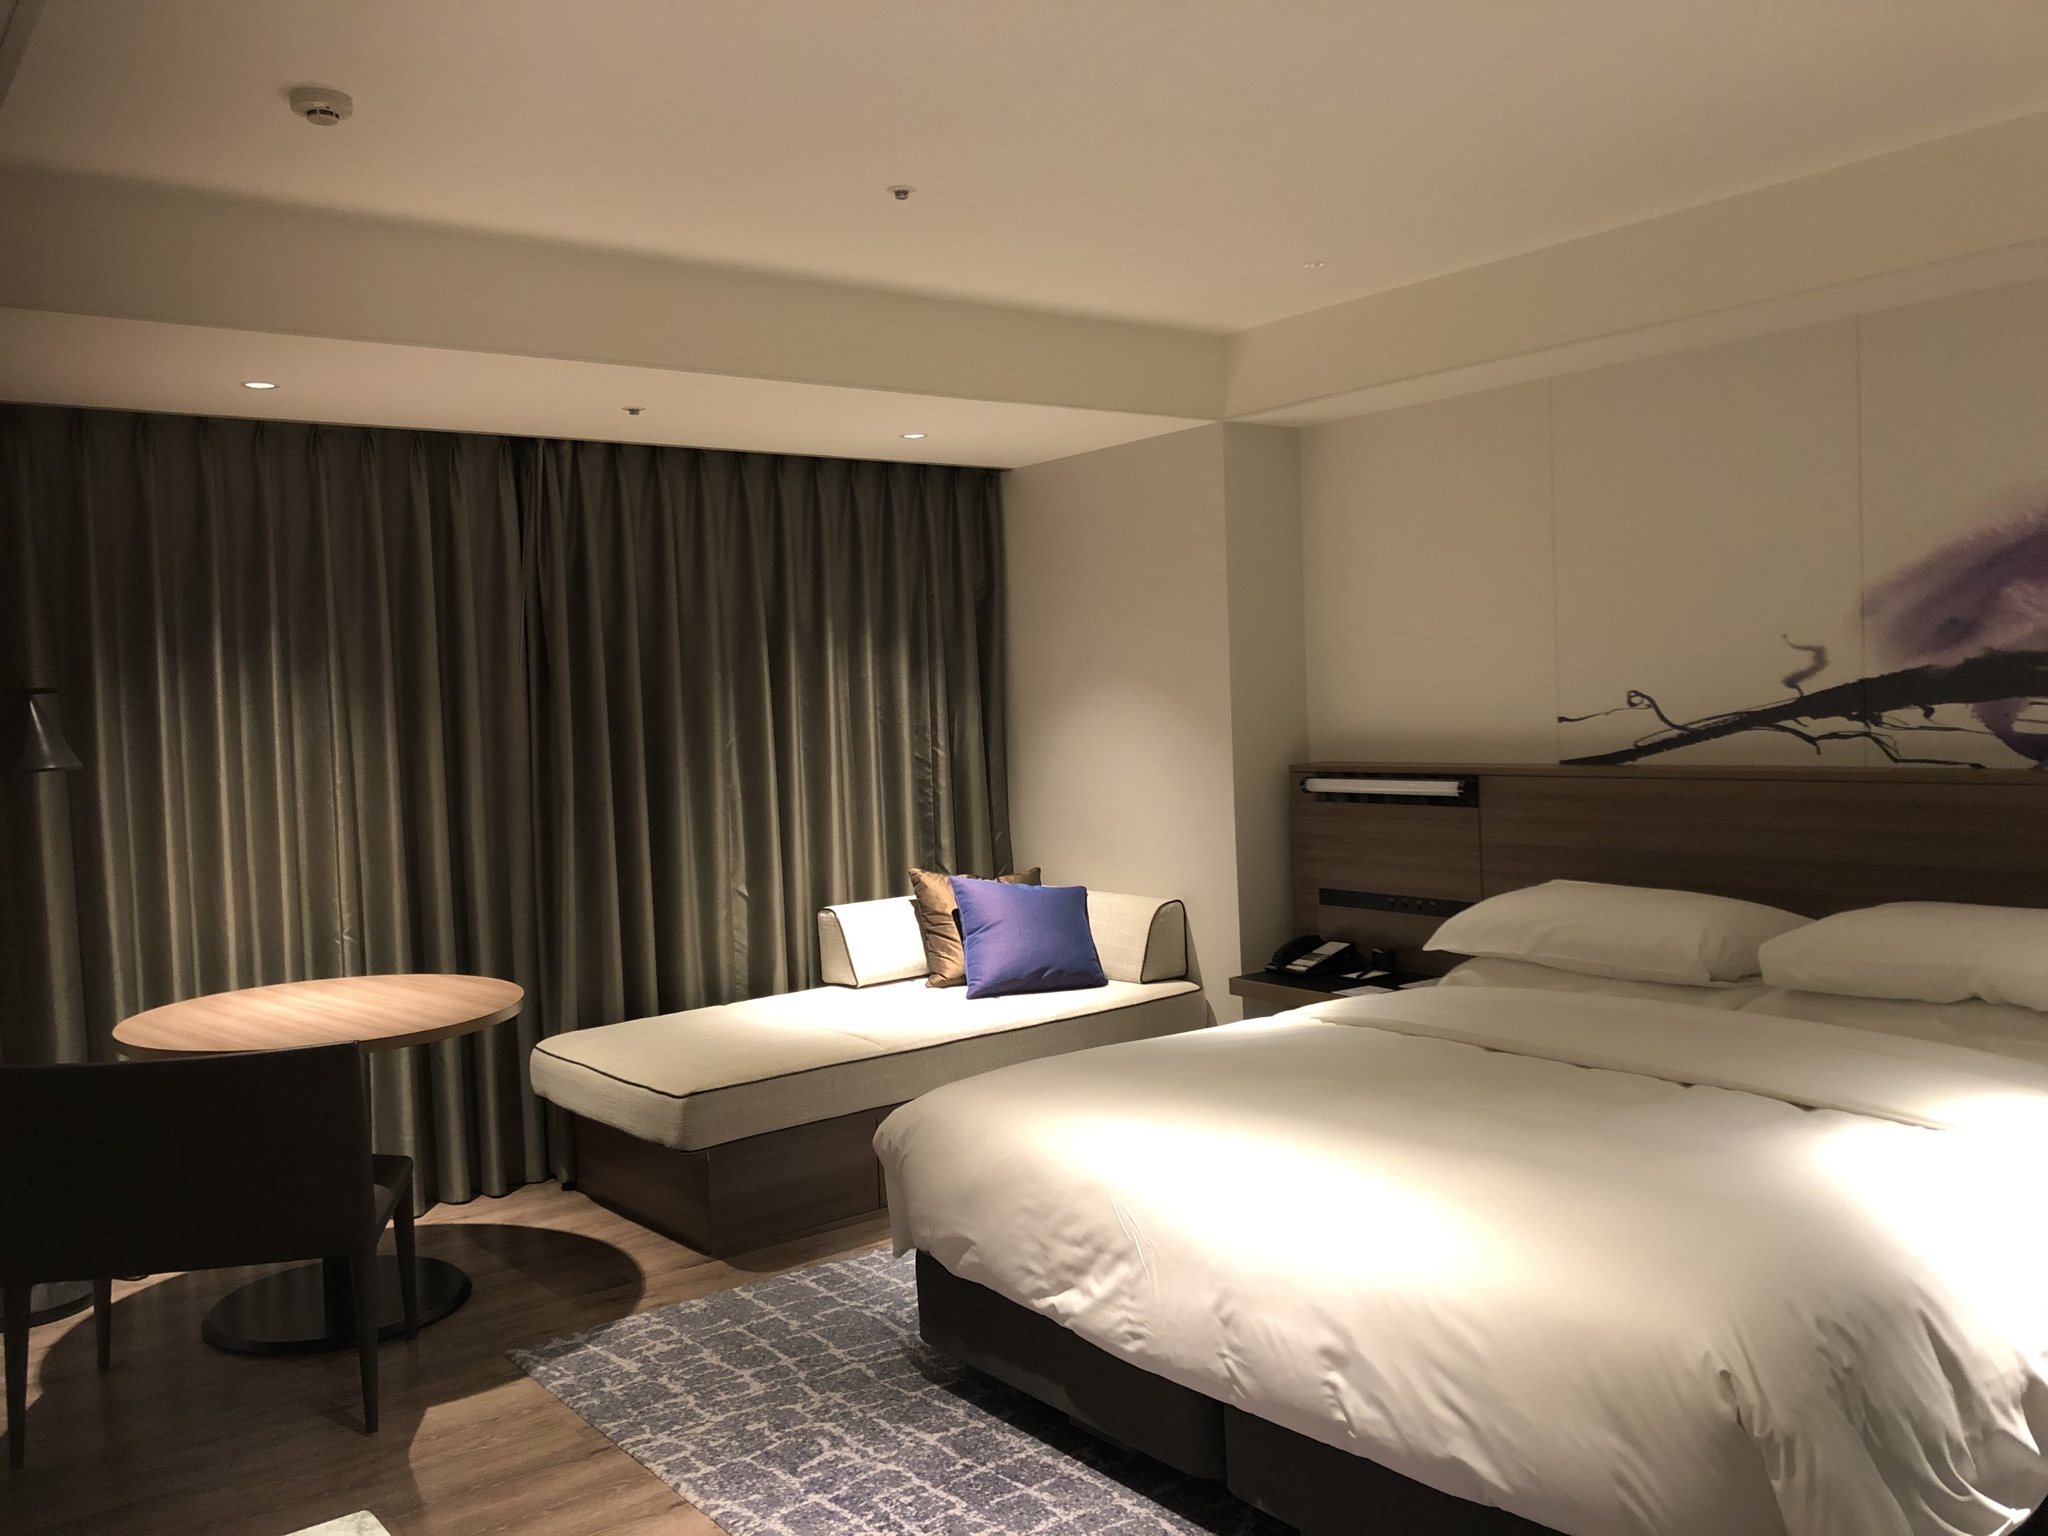  琵琶湖マリオットホテルの客室